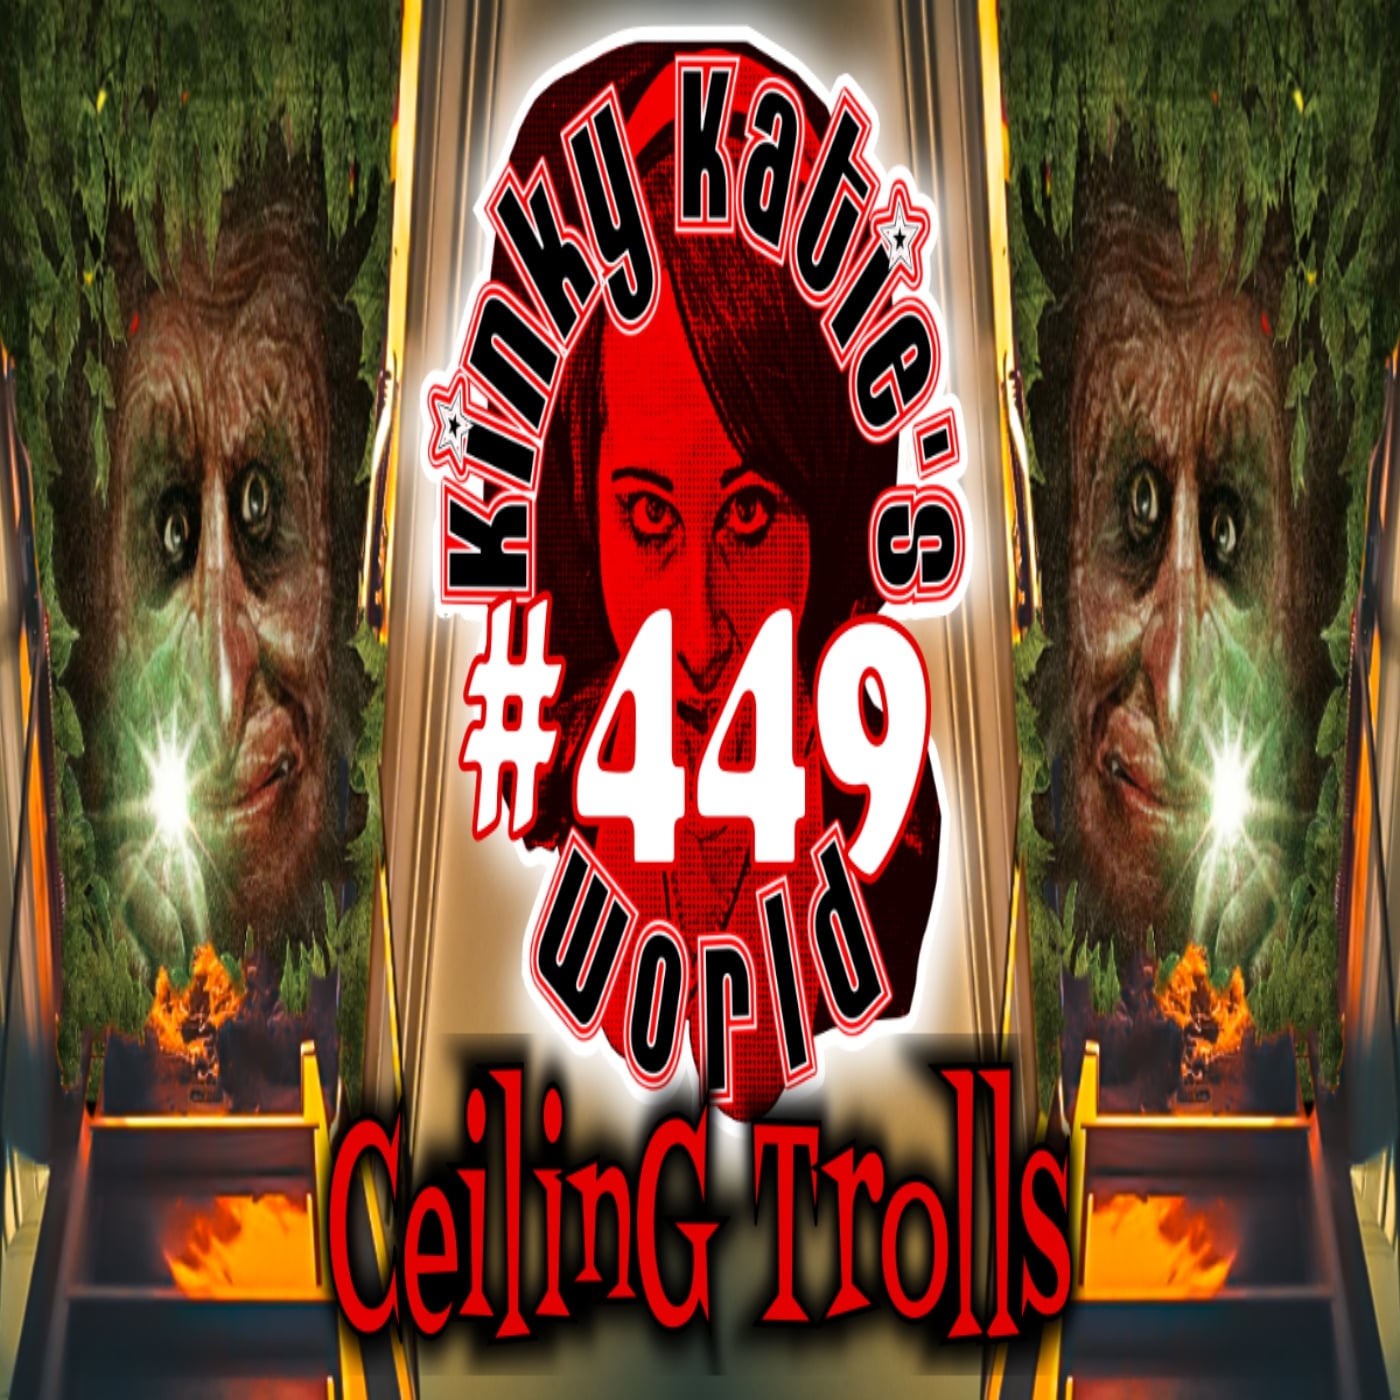 #449 – Ceiling Trolls